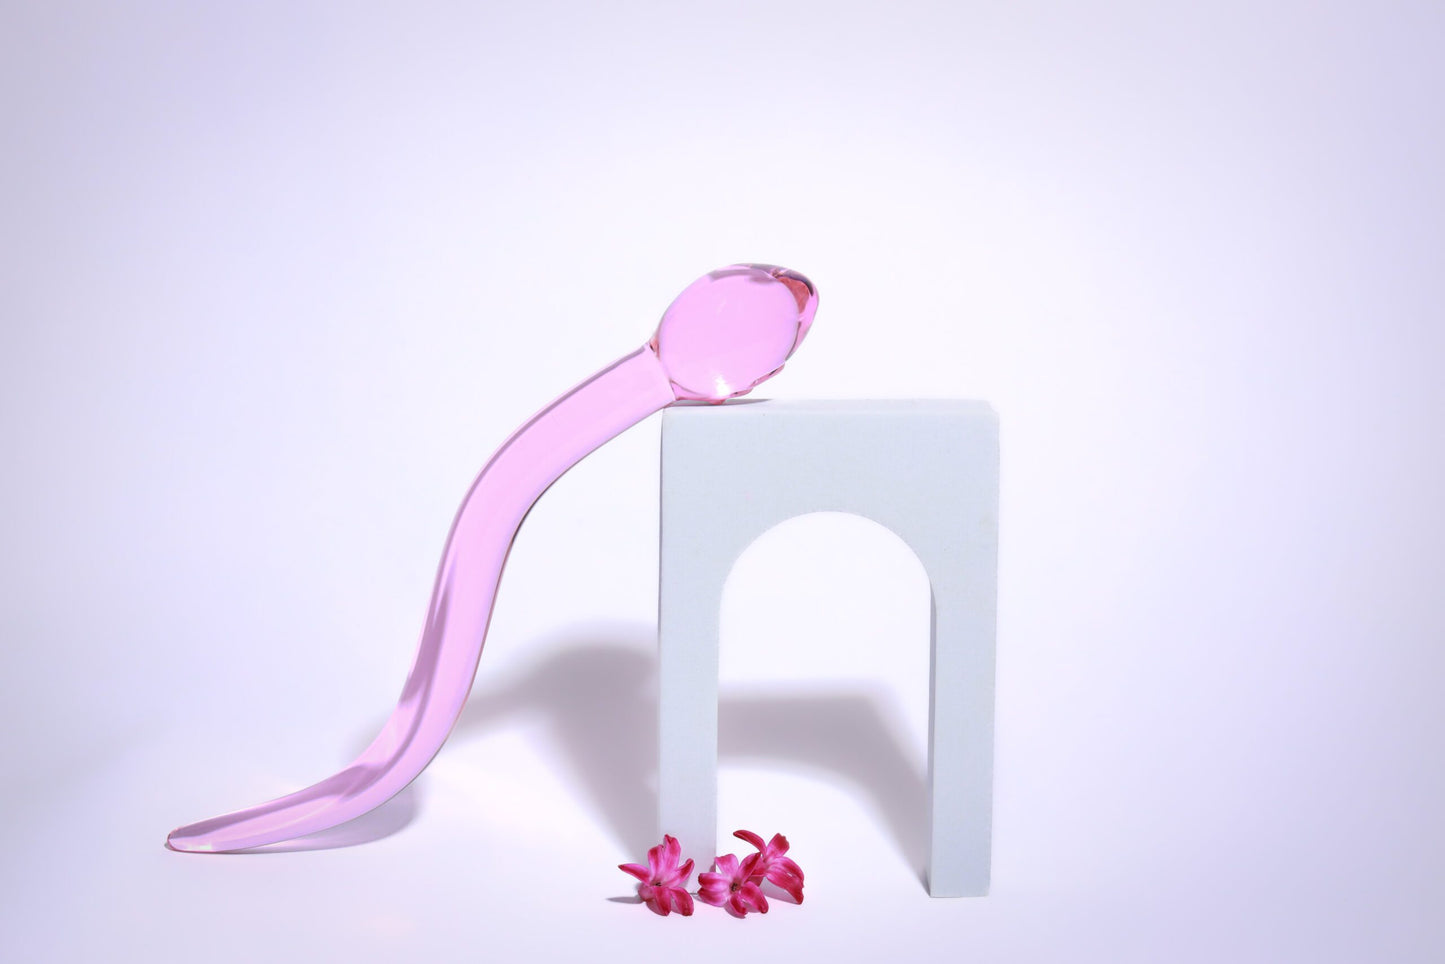 Calypso Cervix stav™ 2.0 Glasdildo - Pink Candy Floss (Limited Edition)